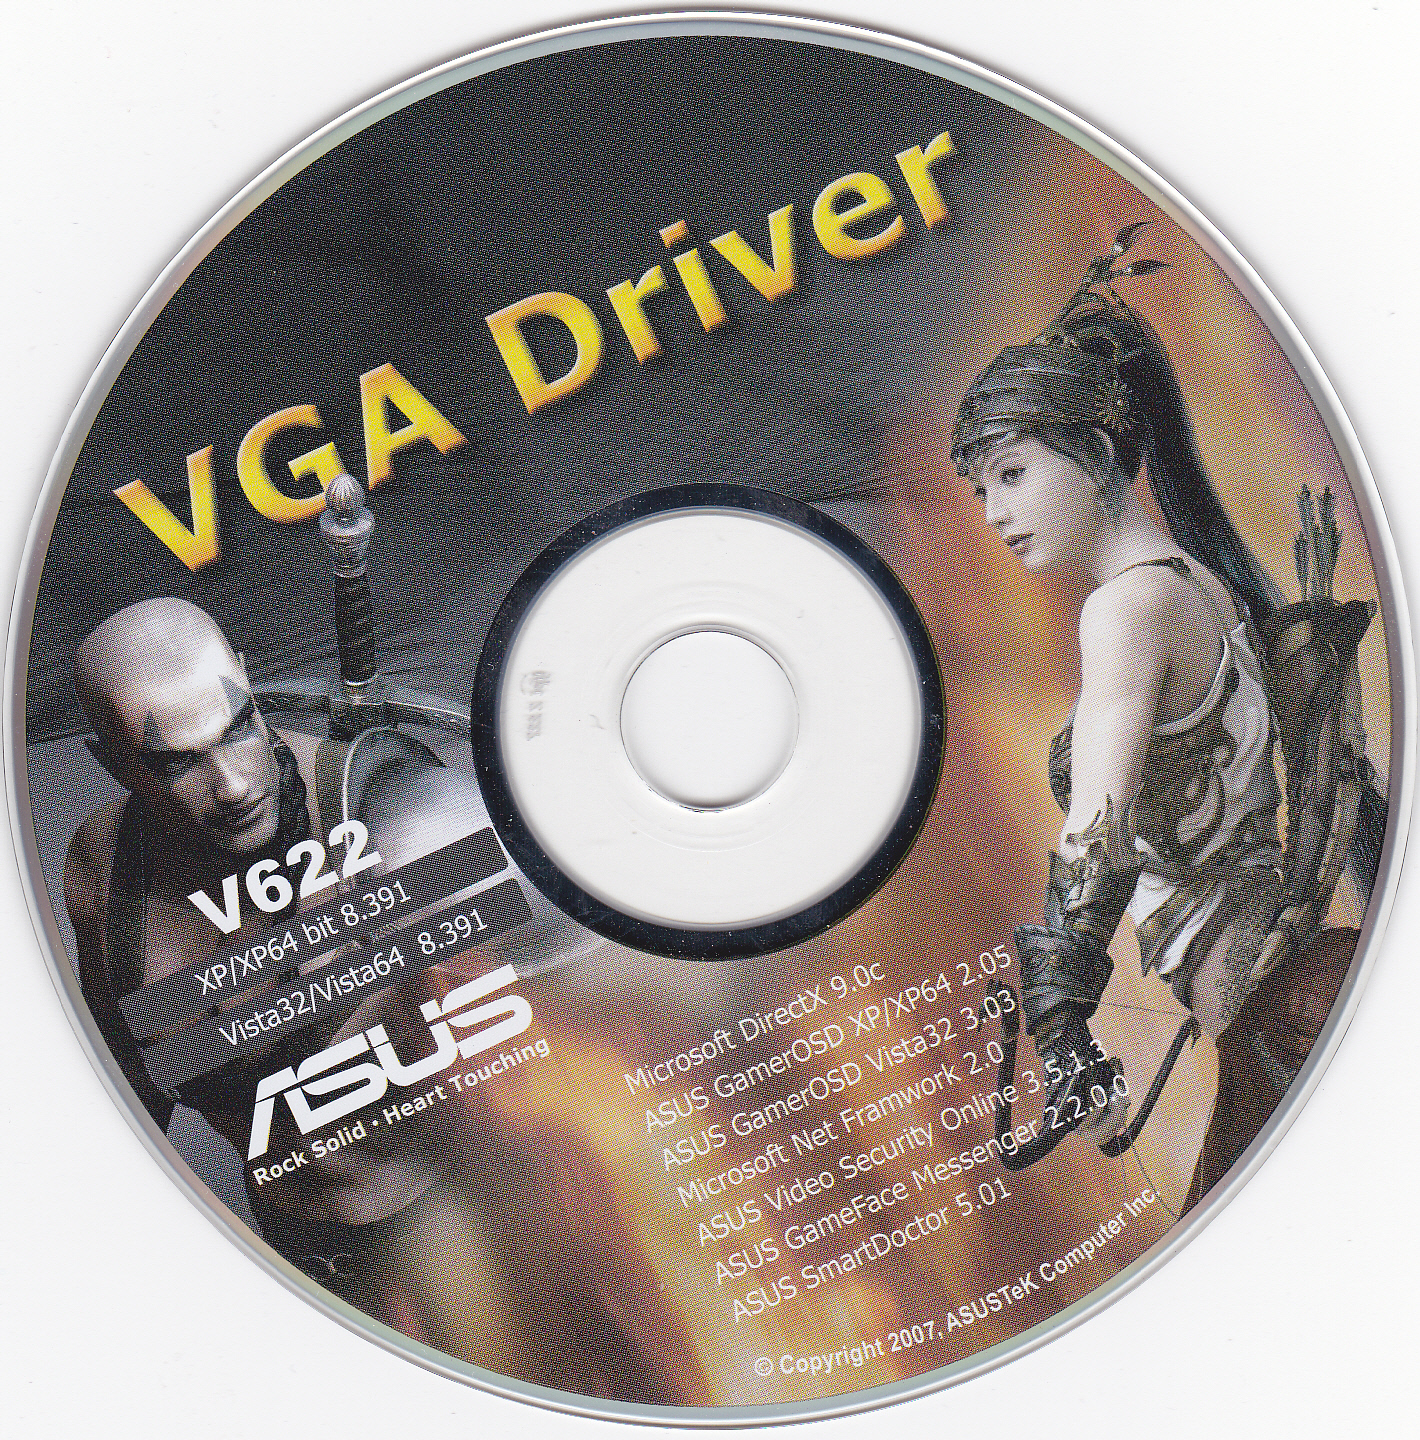 Vga drivers что это. Диск с драйверами. VGA Drivers. Диск драйвера на видеокарту. Диск драйверов асус.